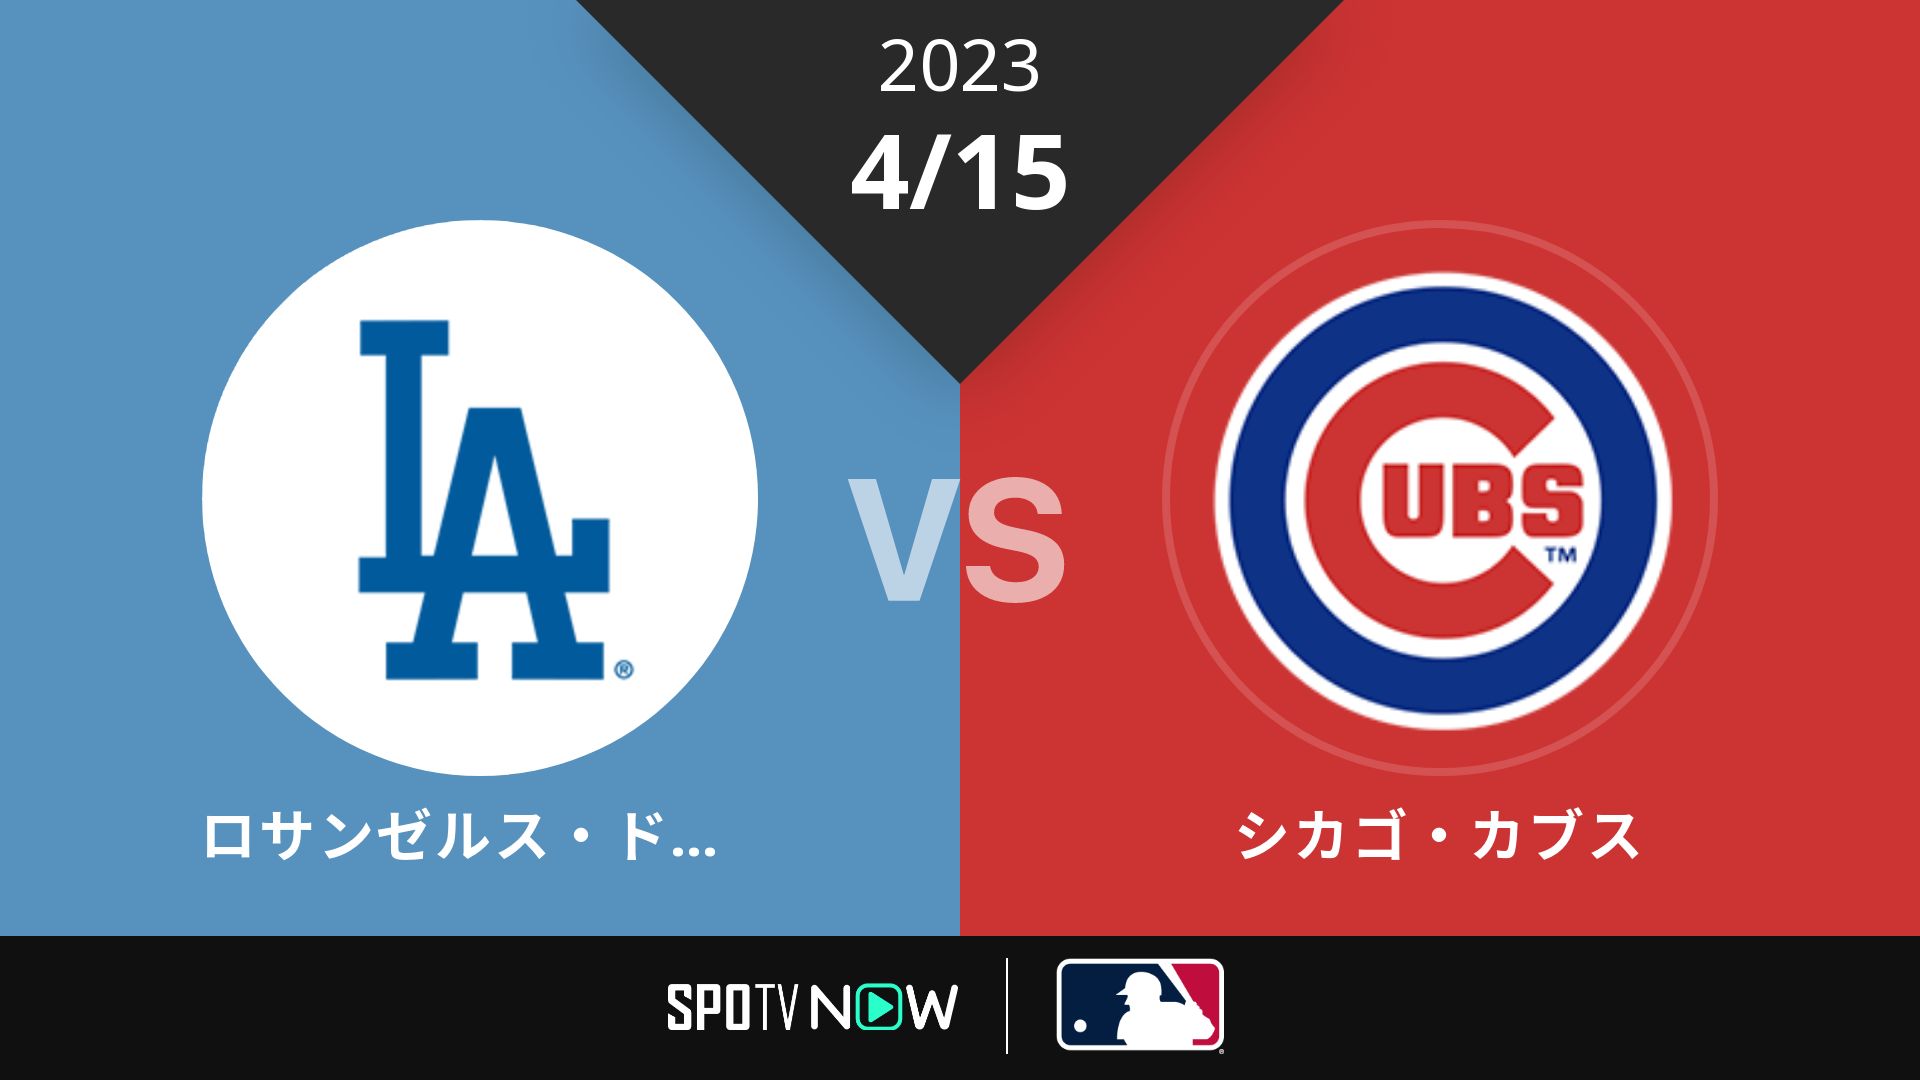 2023/4/15 ドジャース vs カブス [MLB]